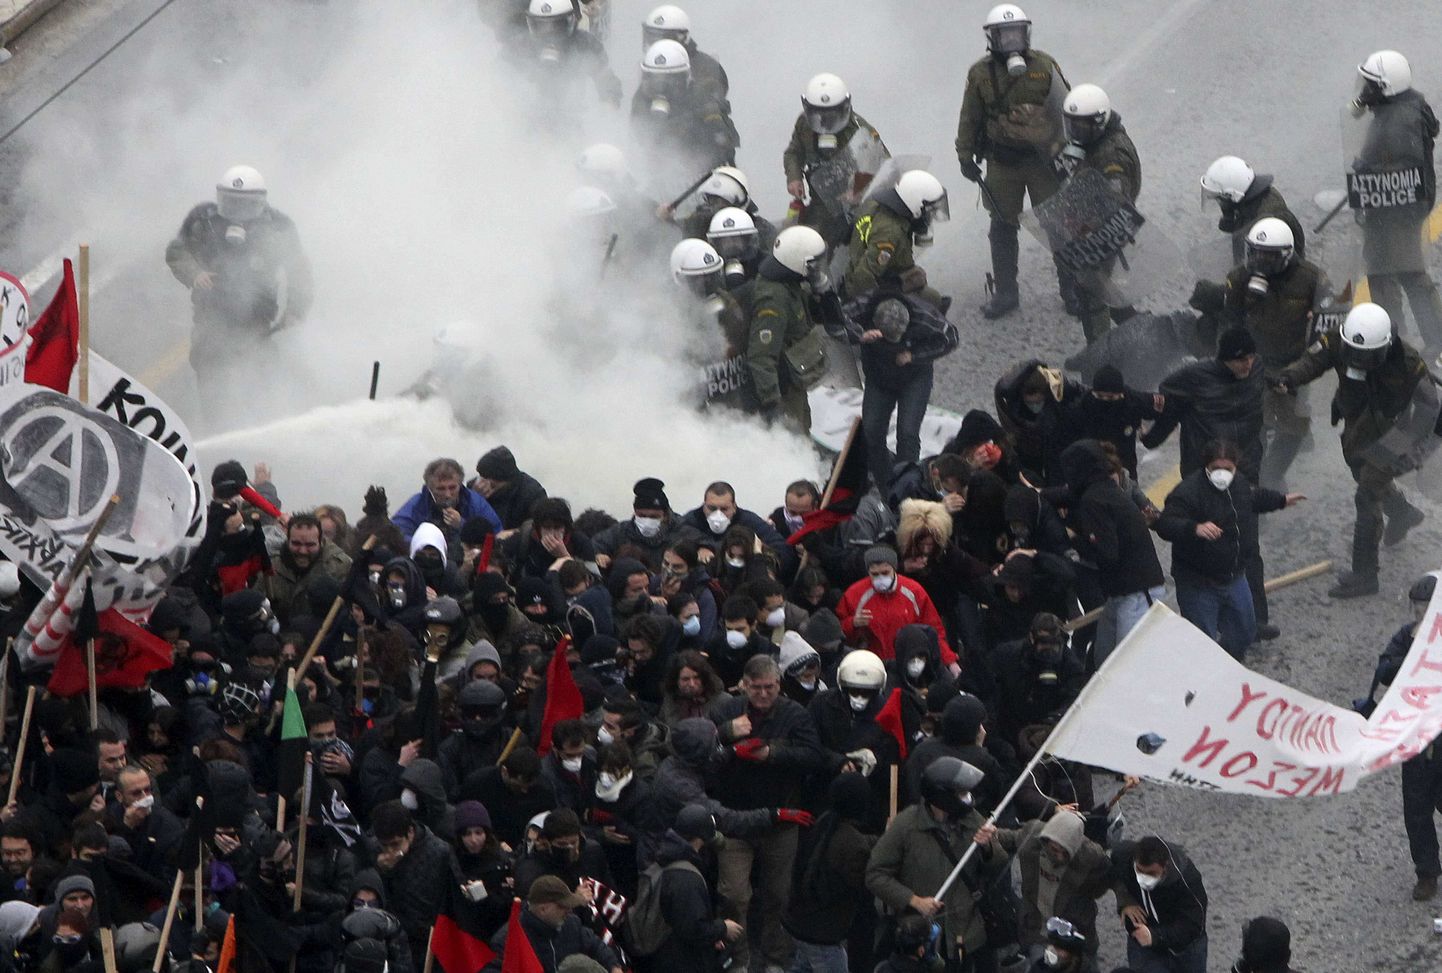 Kreeka märulipolitsei kokkupõrge meeleavaldajatega Ateenas.